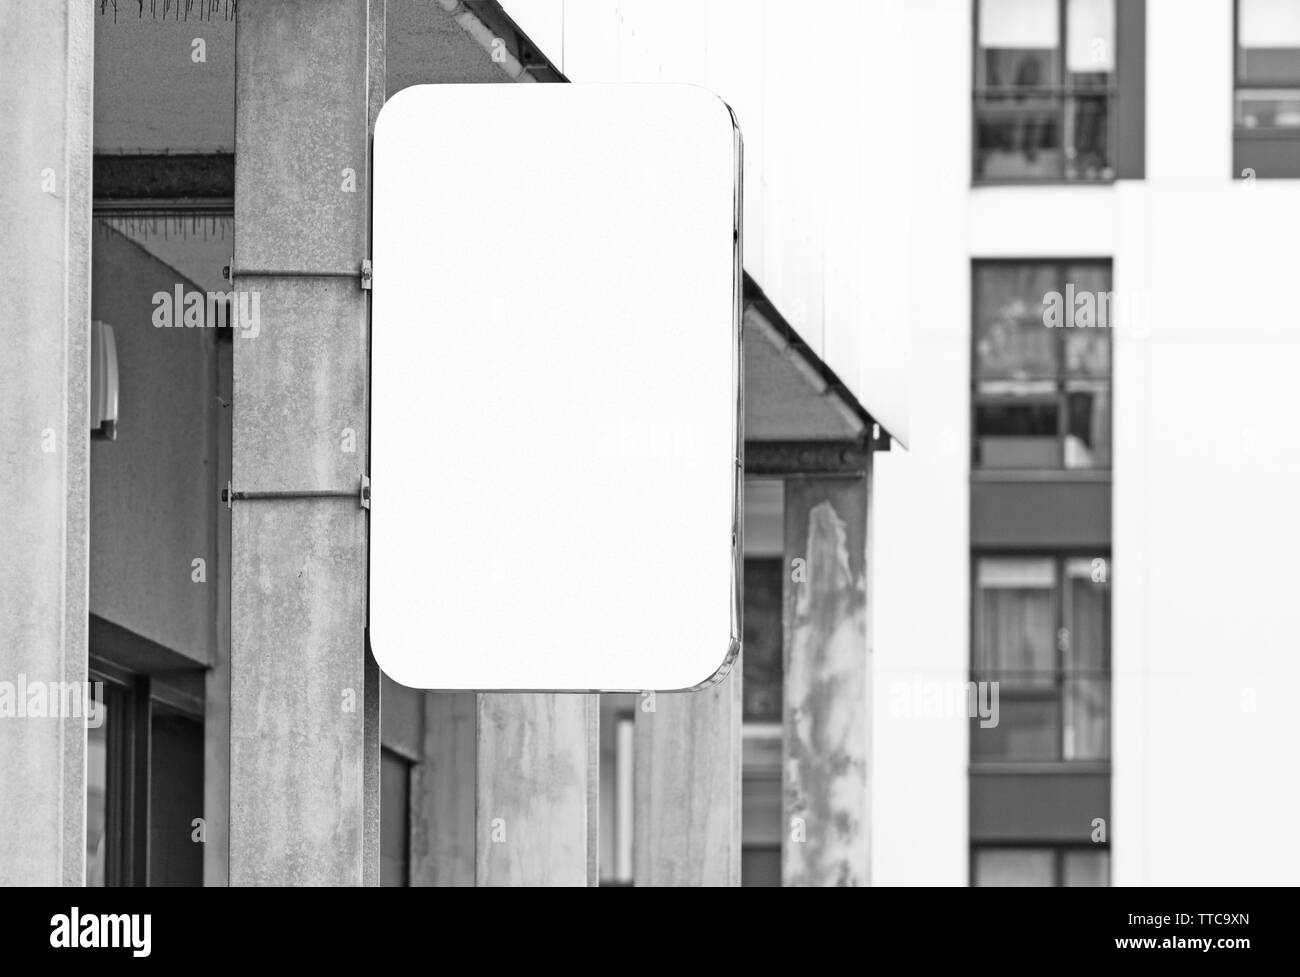 Hängende wand Namensschild jpeg-Mockup, modernen Stil Außenwerbung mit Kopie Raum, Firmenschild, Logo oder Text hinzufügen, Schwarze und Weiße echten Bild Stockfoto